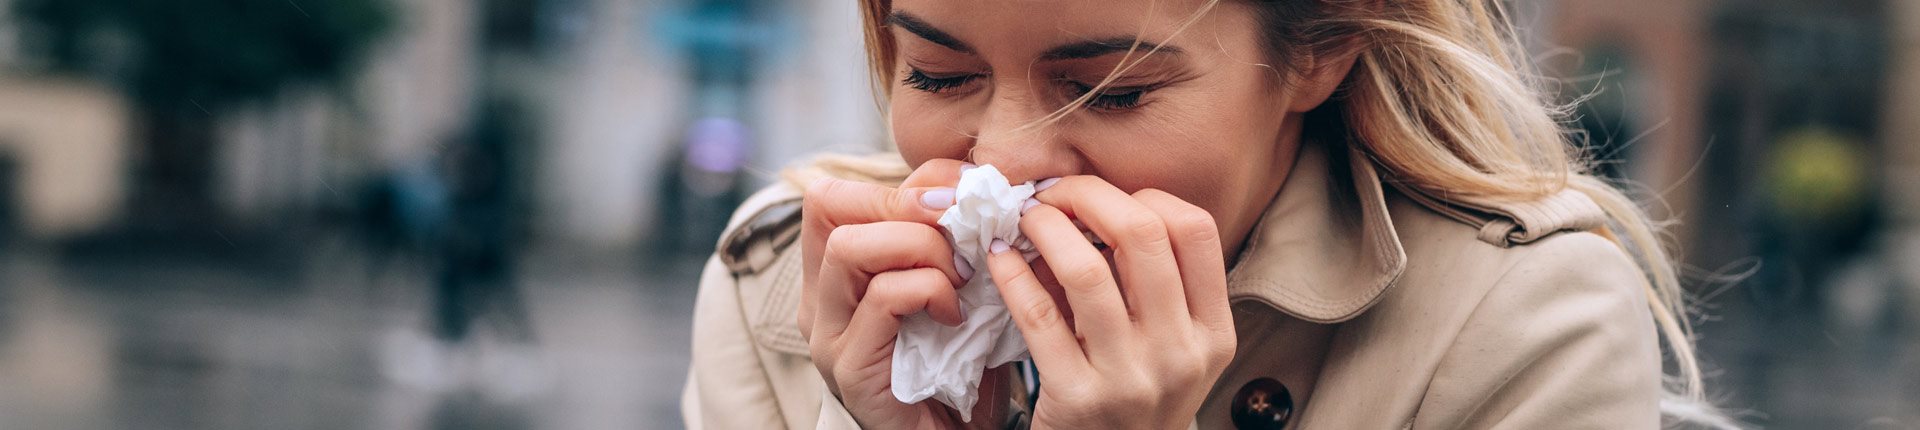 Co robić, a czego nie robić przy pierwszych objawach grypy?